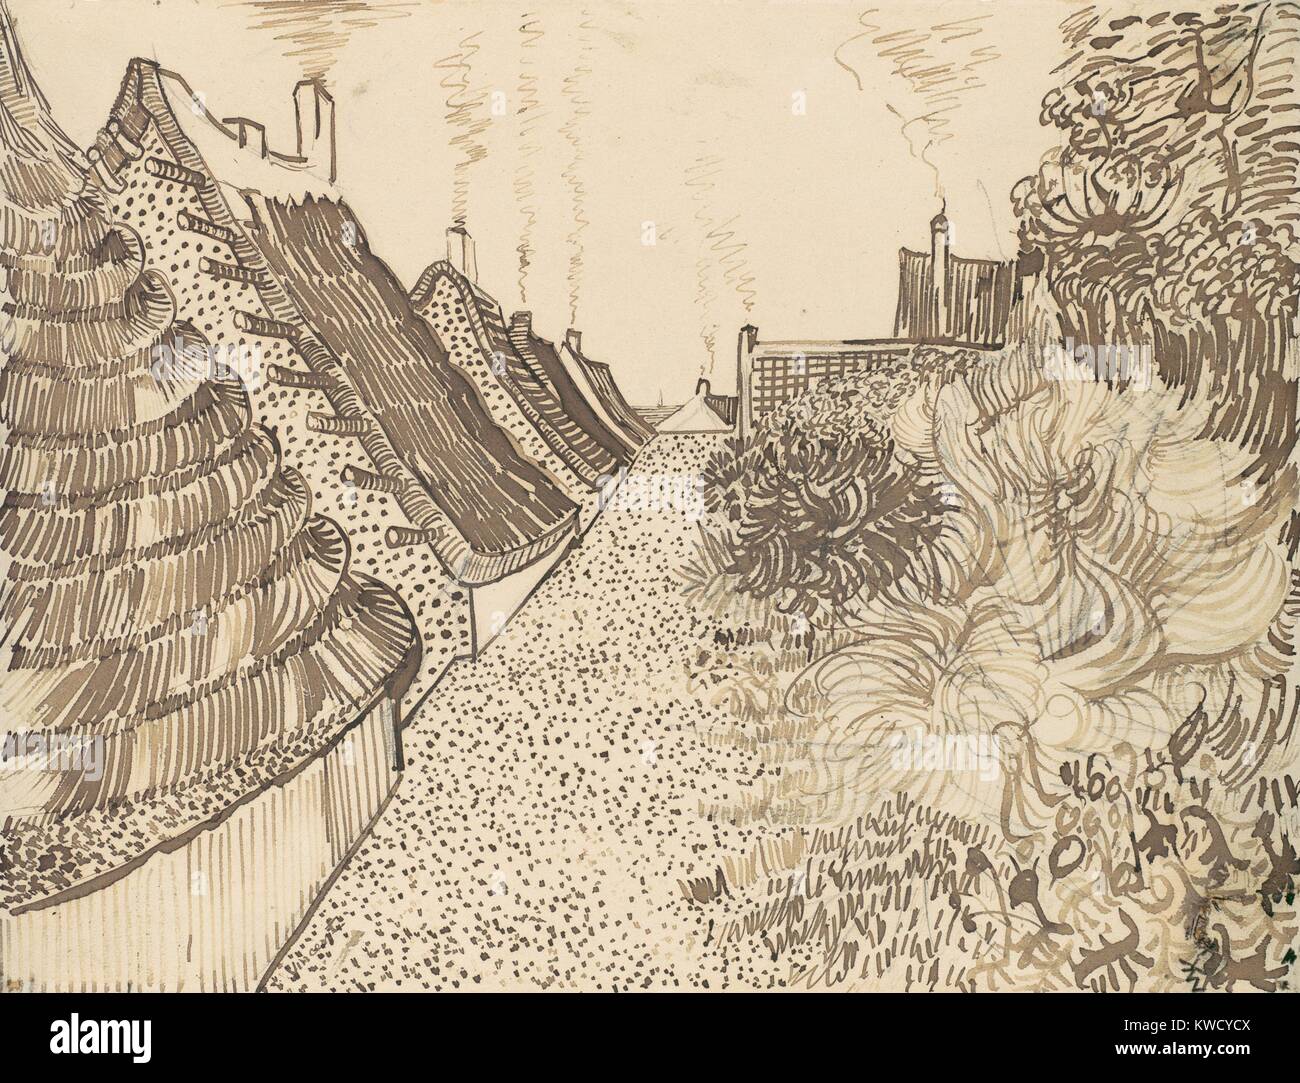 Straße in Saintes-Maries-de-la-Mer, von Vincent Van Gogh, 1888, Dutch Post-Impressionist Zeichnung. Die rohrfeder und Tusche über Graphit auf Papier war in einem mediterranen Fischerdorf Szene mit Strohdächern und Rauchende Schlote (BSLOC 2017 5 59) Stockfoto